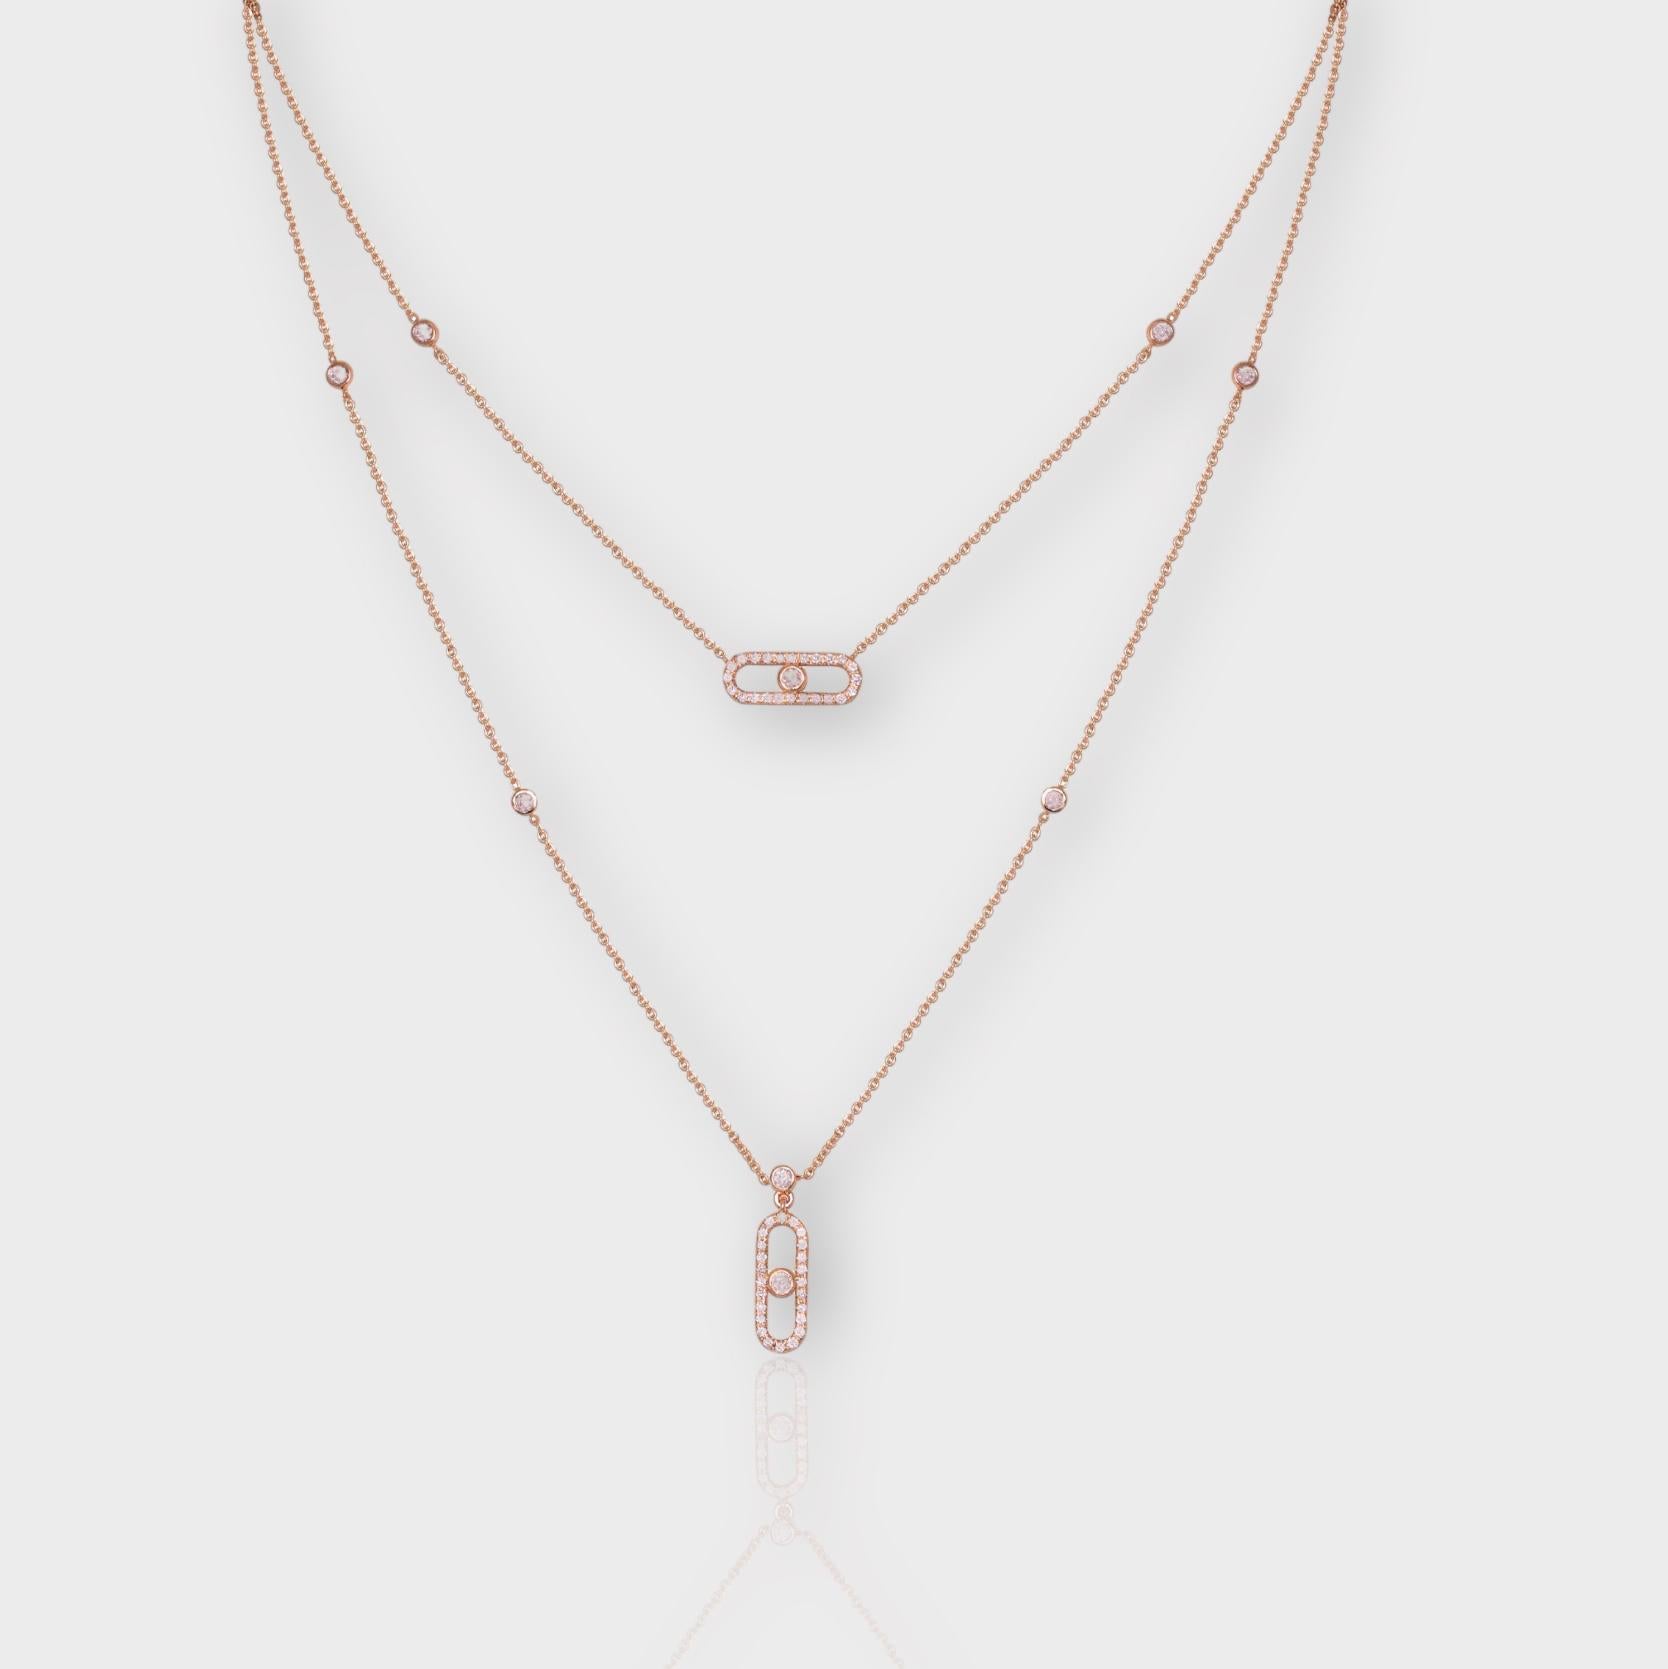 *IGI 14K 0,79 ct natürliche rosa Diamanten  Art Deco Design Halskette*

Dieses Band zeichnet sich durch ein atemberaubendes Art-Deco-Design aus, das aus 14-karätigem Rotgold gefertigt ist. Er ist mit natürlichen rosa Diamanten von 0.79 Karat